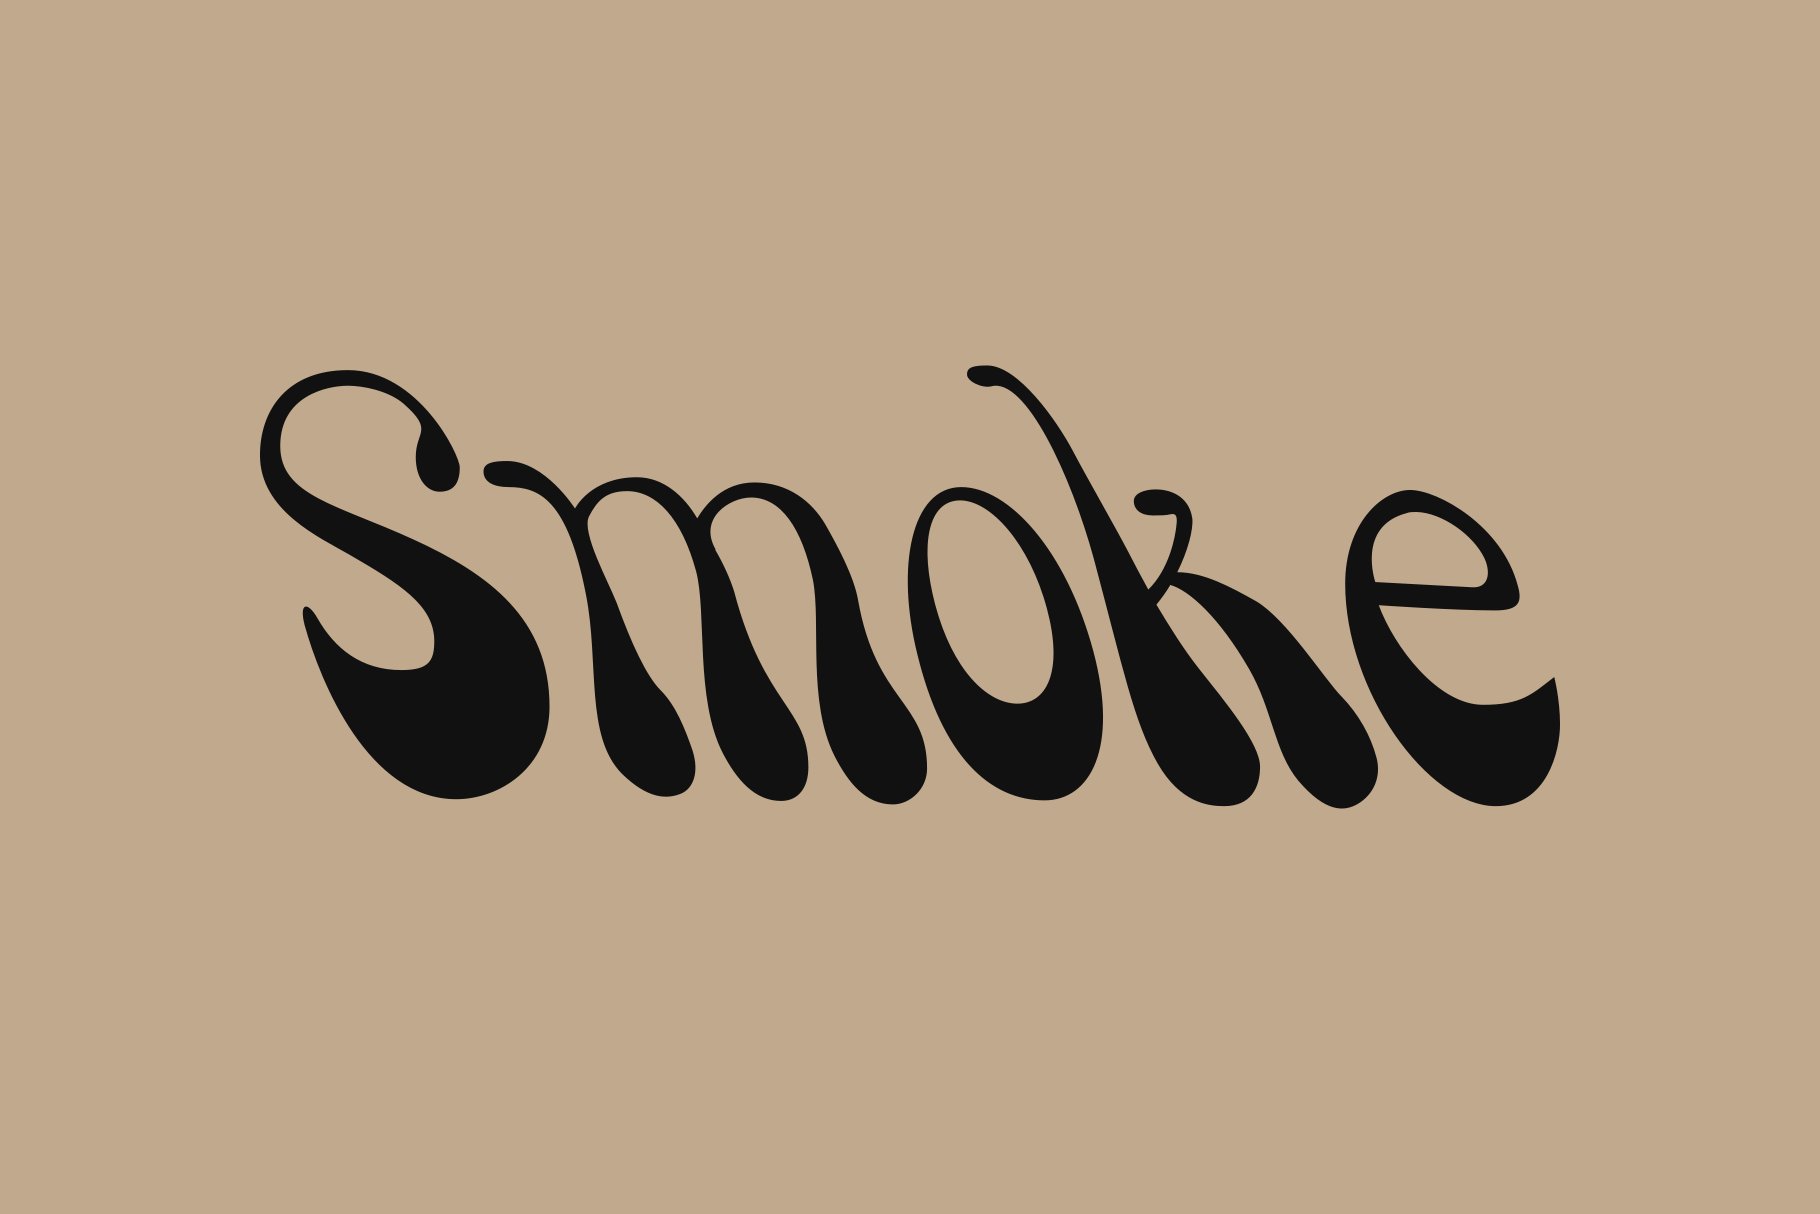 Smokecover image.